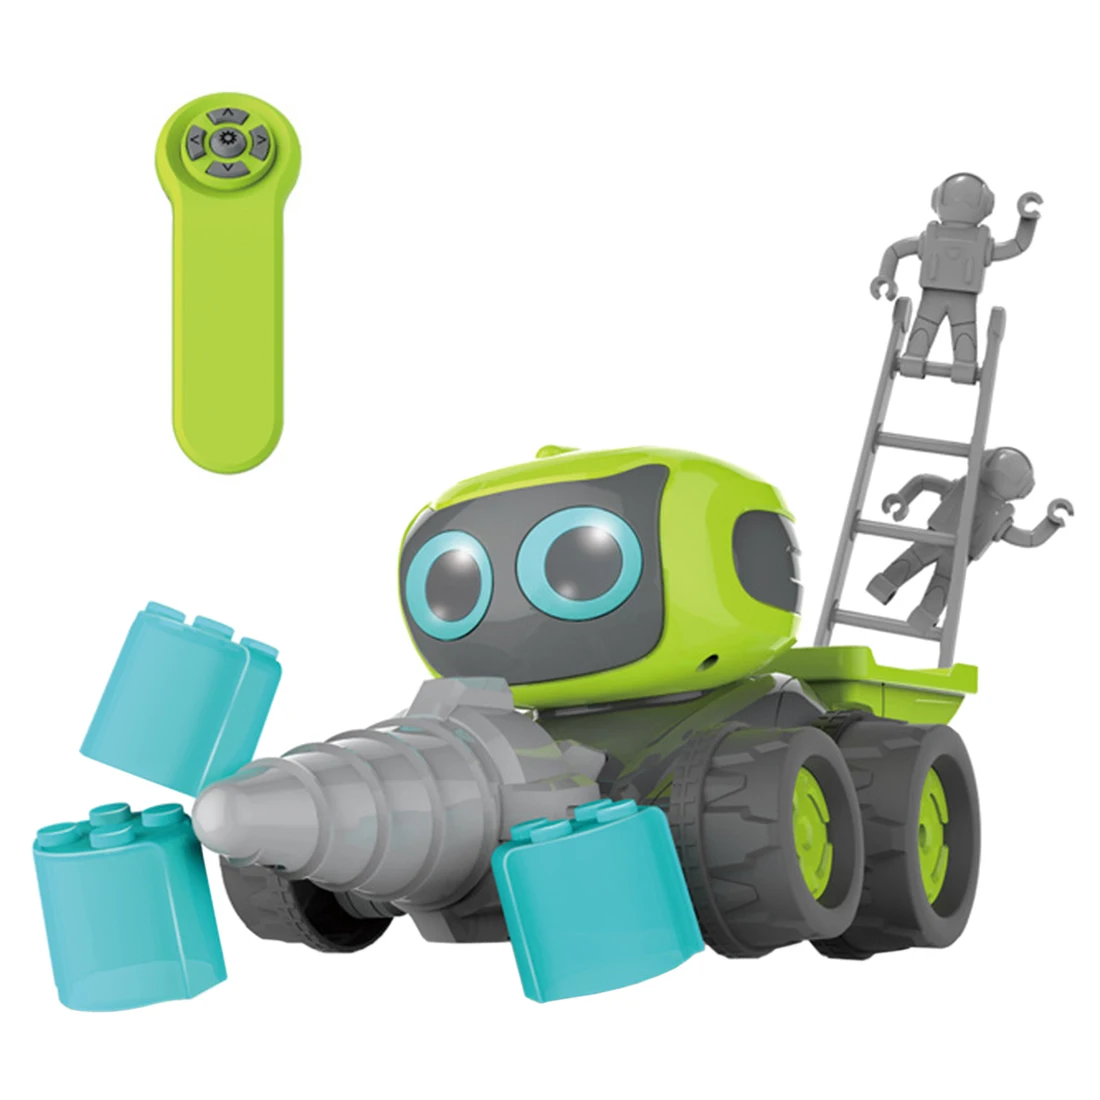 Modiker High Tech игрушка Смарт Программирование RC робот инженерный бульдозер вилочный погрузчик сборки Игрушка для дома для детей